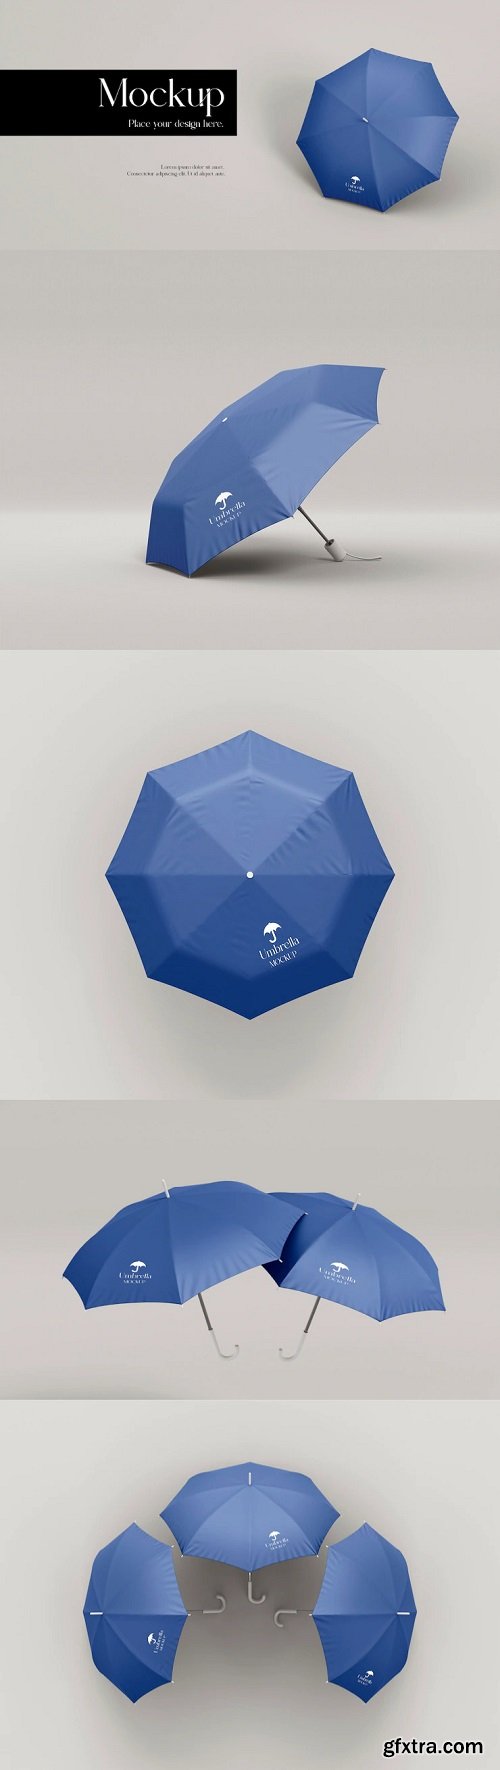 Umbrella mockup design